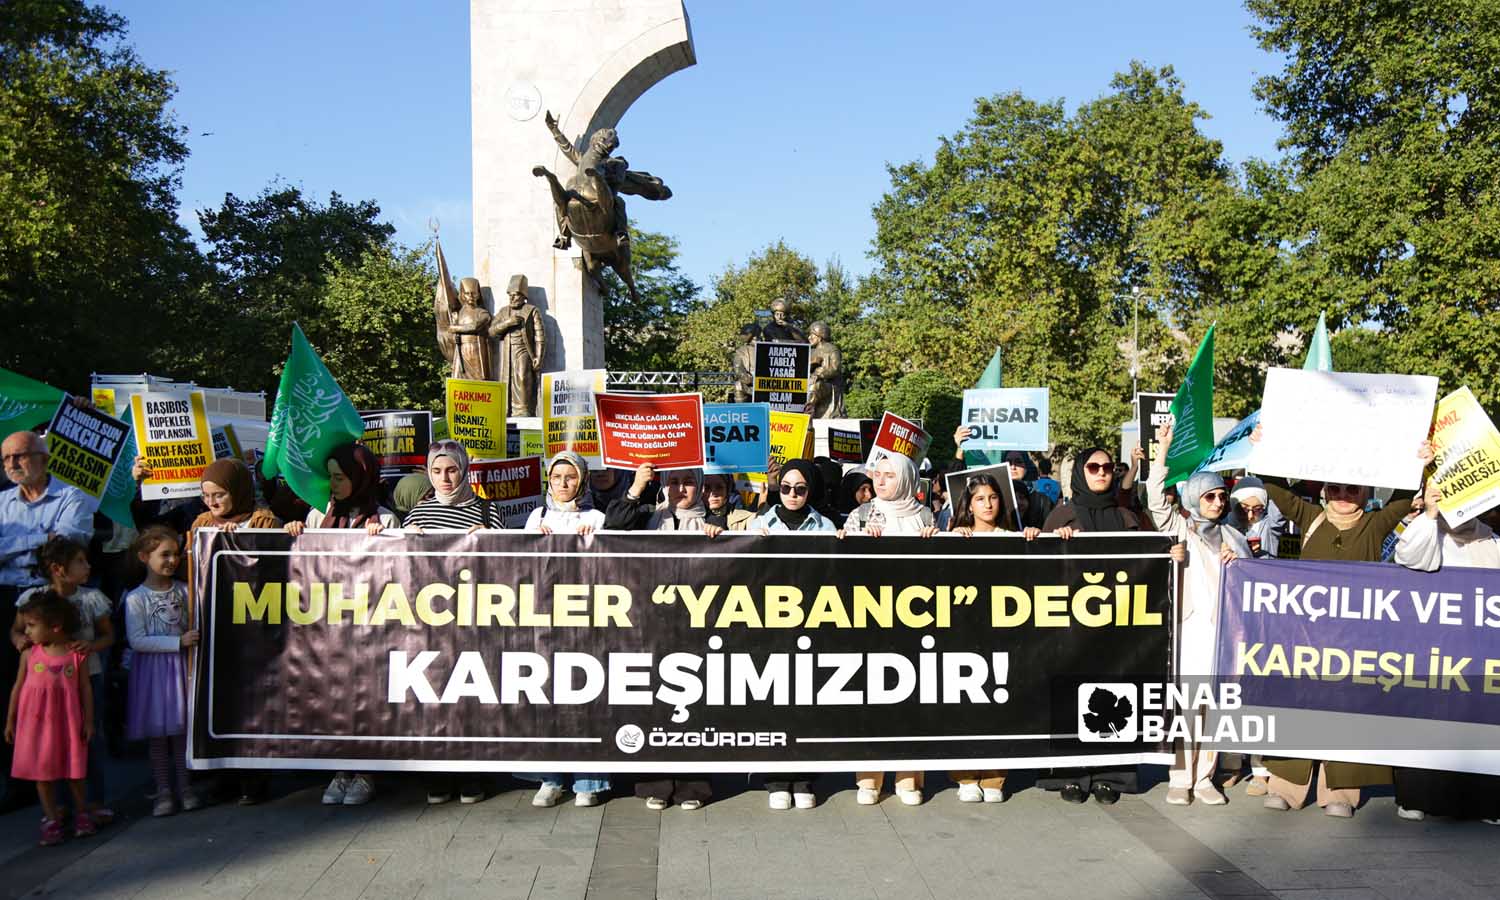 ناشطون يرفعون لوحات تندد بالعنصرية، وكتب عاللوحة السوداء عبارة"المهاجرين ليسوا غرباء بل هم اخواتنا"- اسطنبول 16 من أيلول 2023 (- يوسف حمّص)